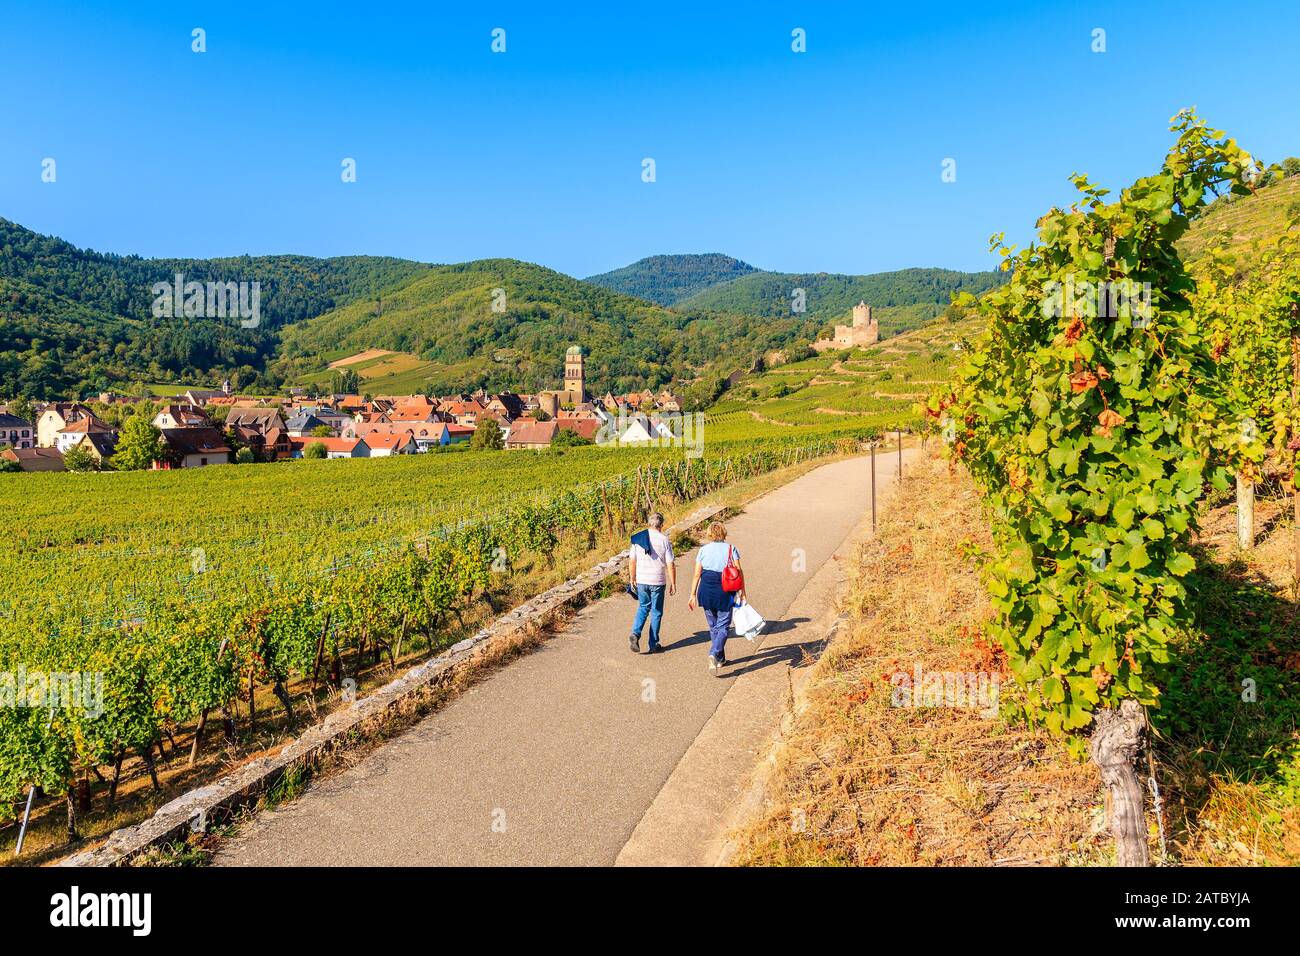 Coppia di persone non identificate che camminano tra i vigneti verdi al villaggio medievale di Kaysersberg sulla strada del vino alsaziano, Francia Foto Stock